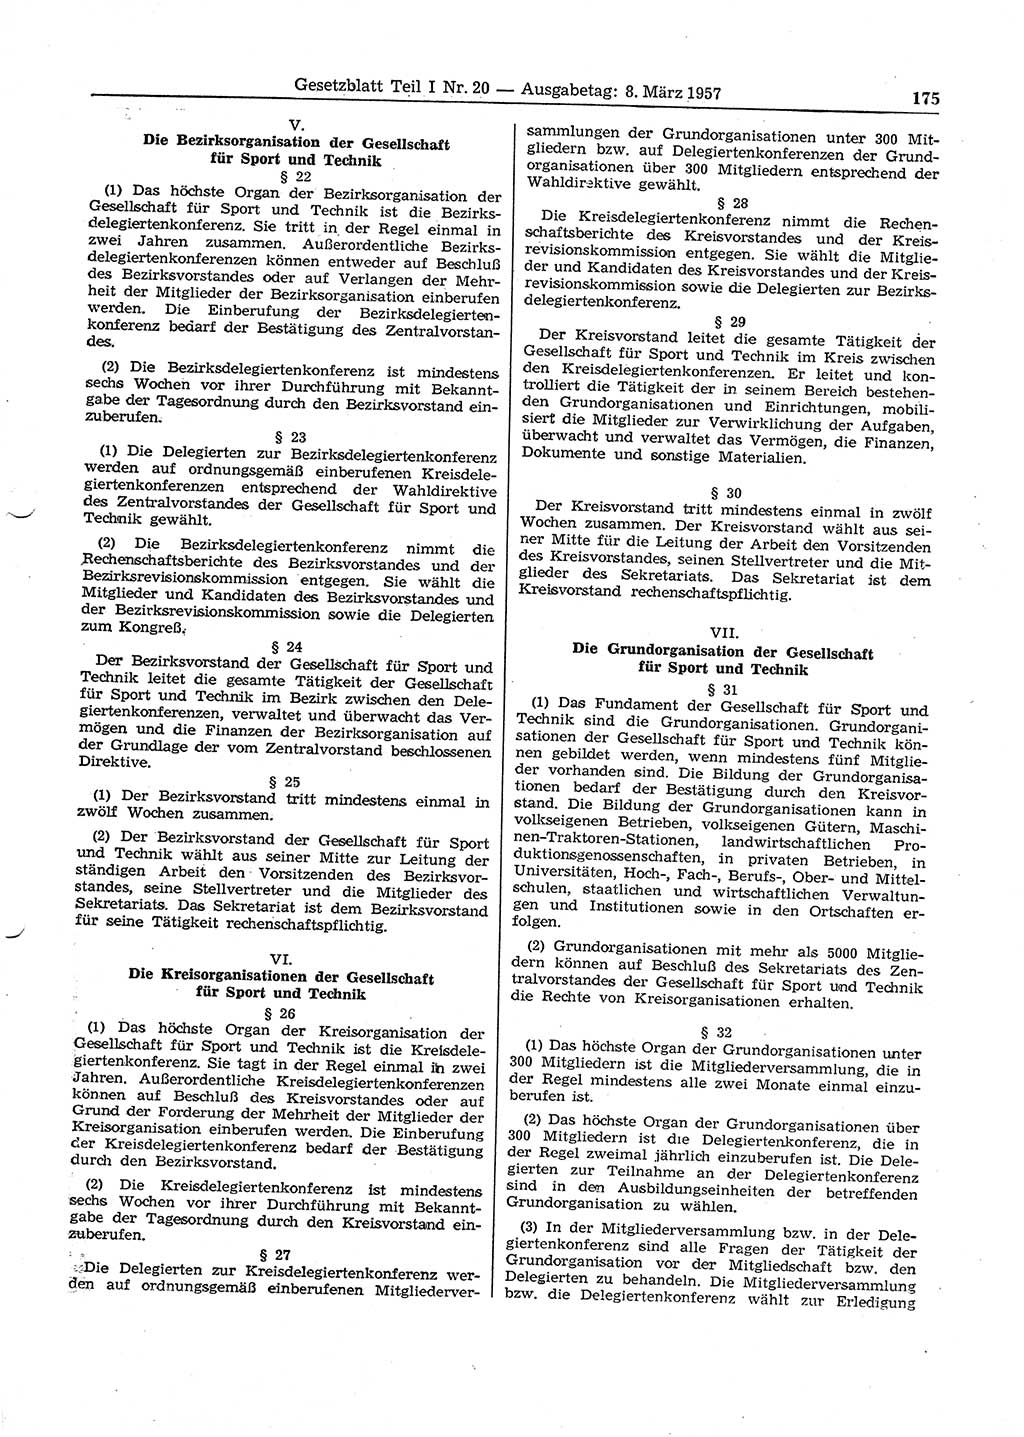 Gesetzblatt (GBl.) der Deutschen Demokratischen Republik (DDR) Teil Ⅰ 1957, Seite 175 (GBl. DDR Ⅰ 1957, S. 175)